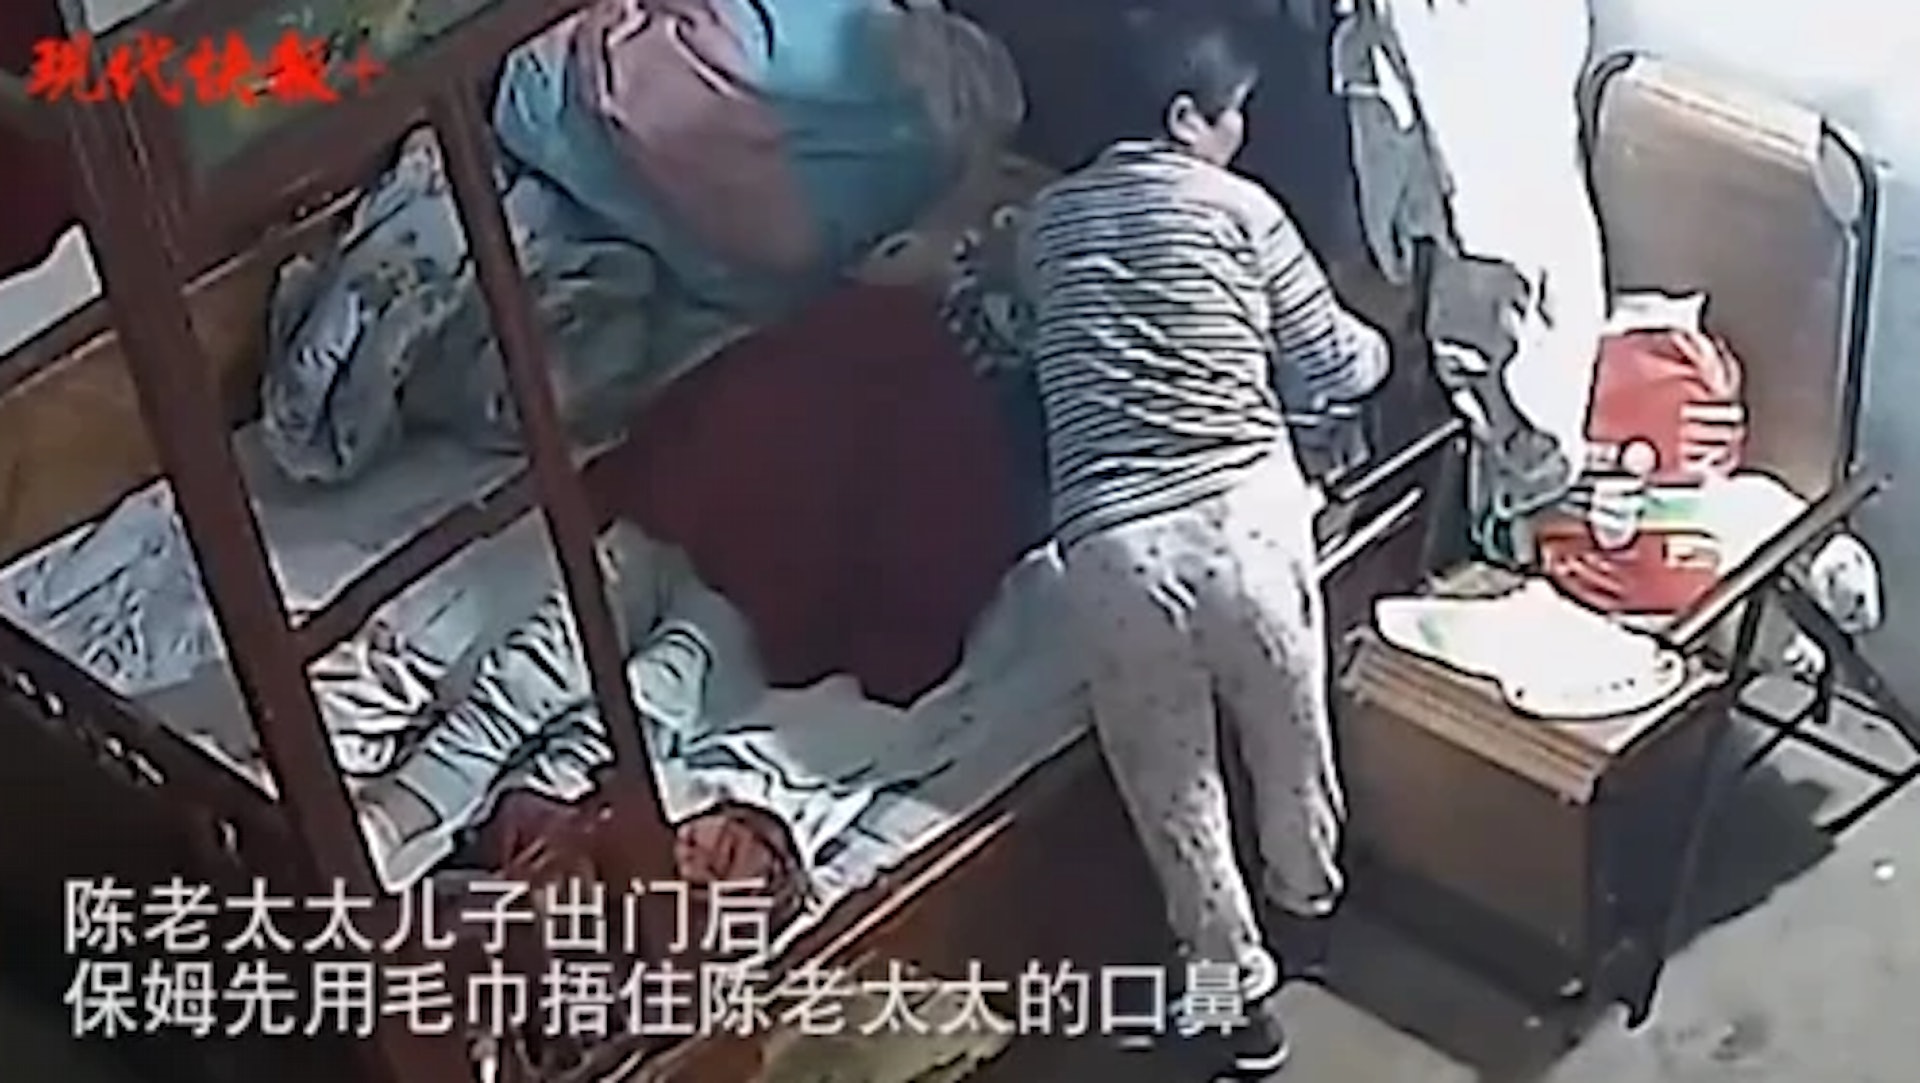 網絡上流傳的影片可看出陳宇萍曾企圖悶死前雇主。(現代快報)